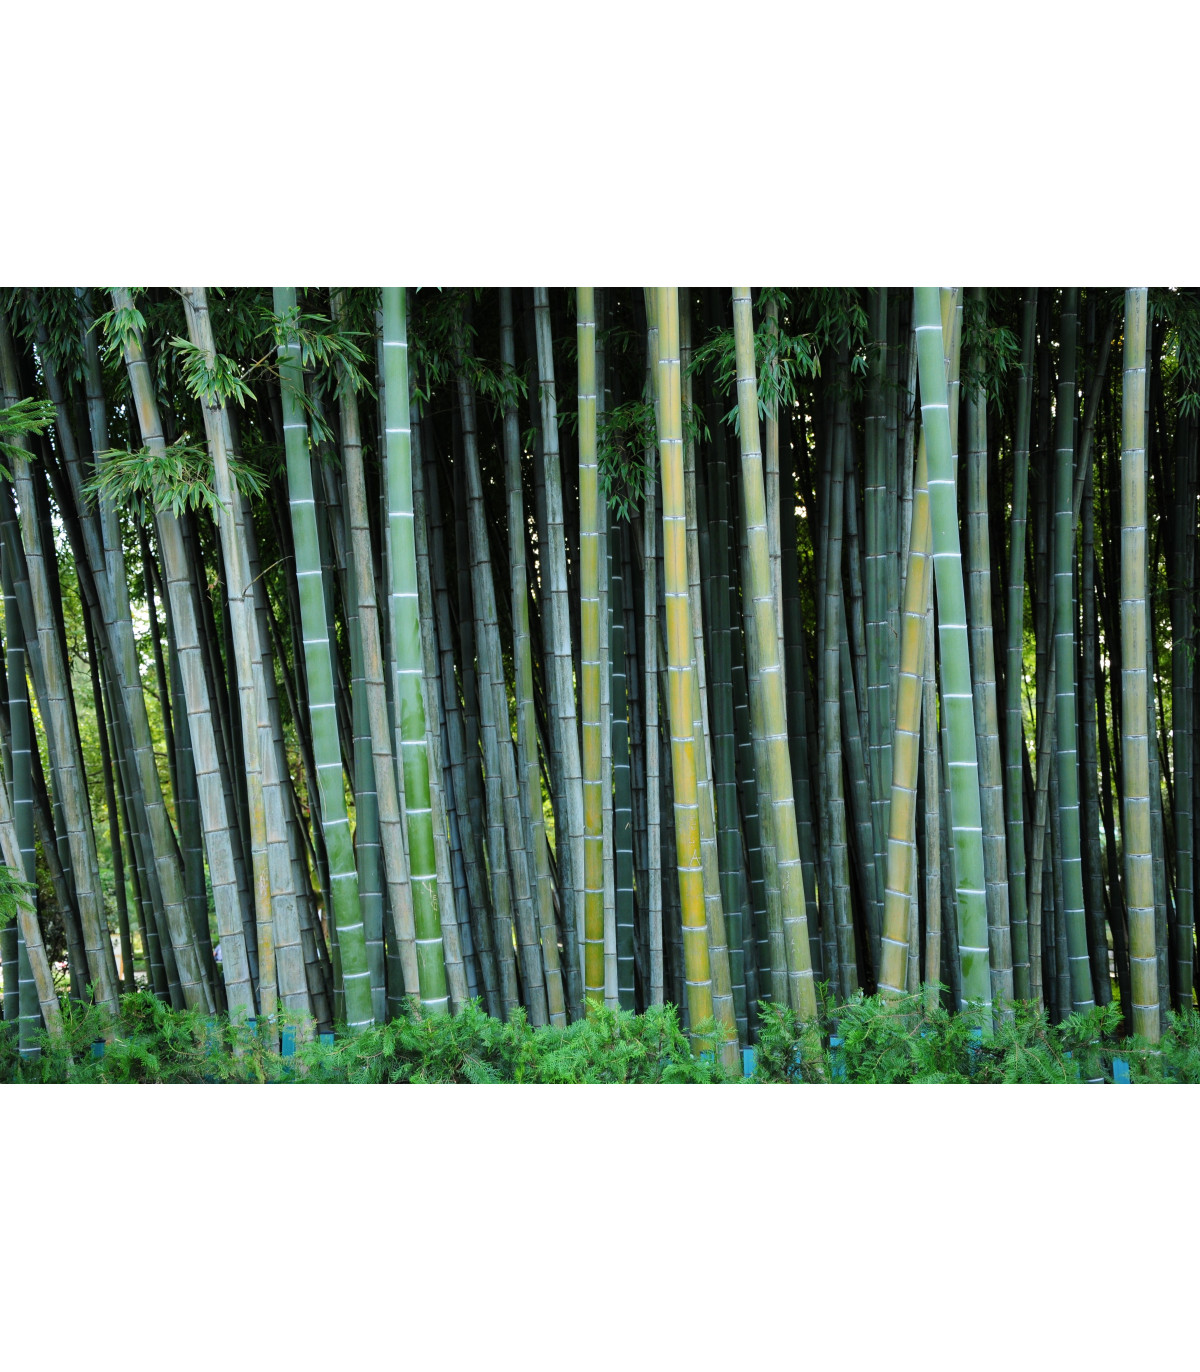 Kráľ bambusov - Phyllostachys pubescens - semiačka - 3 ks